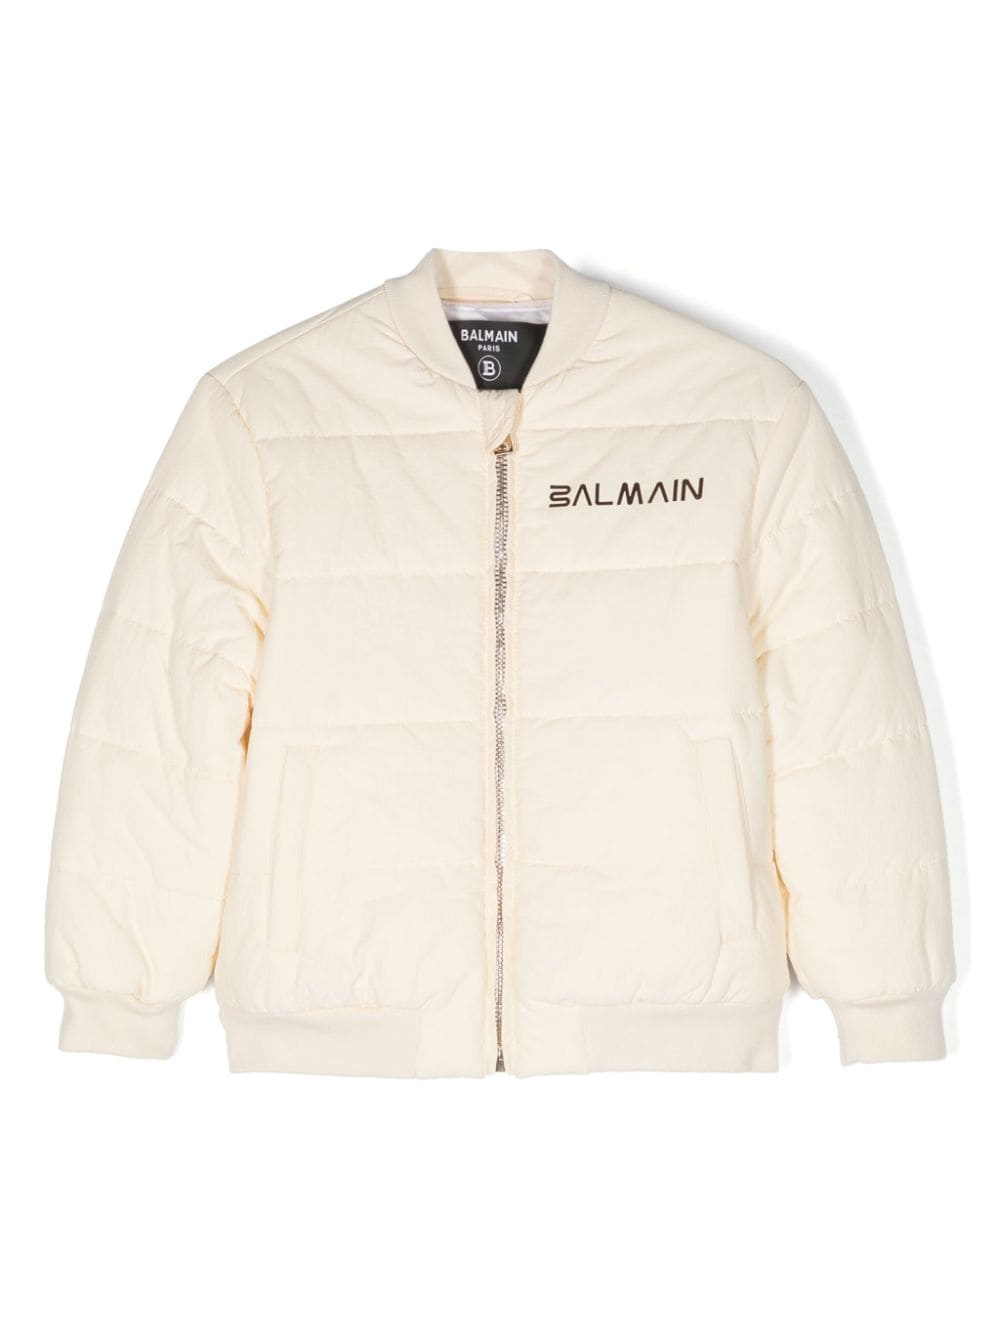 Balmain Kids' Logo-print Padded Bomber Jacket In Cream Colour